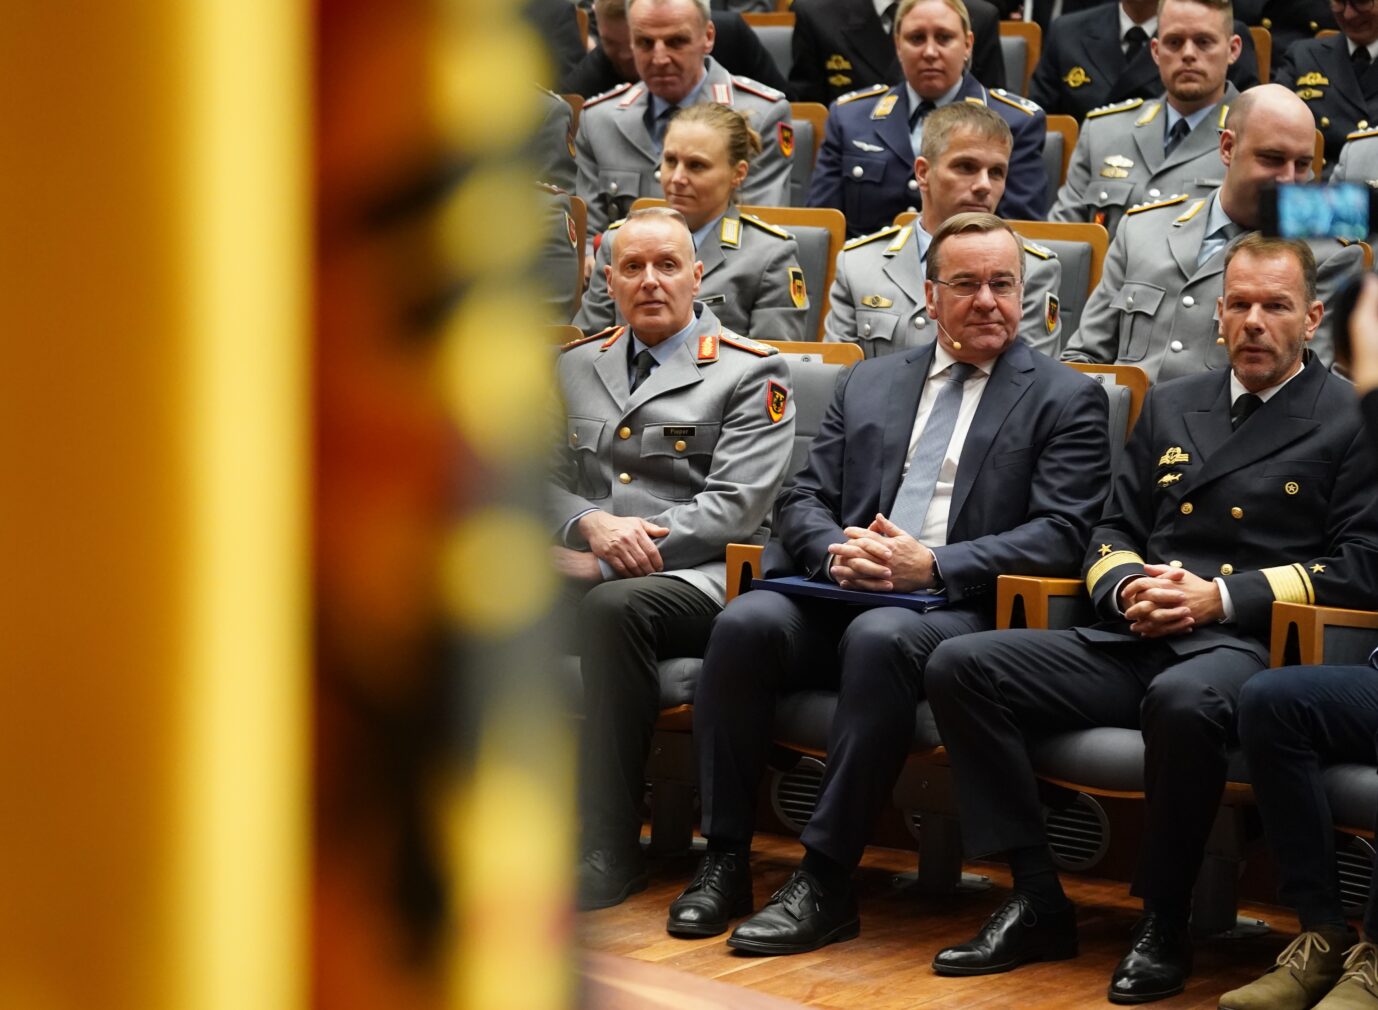 Verteidigungsminister Boris Pistorius (SPD) an der Führungsakademie der Bundeswehr in Hamburg – er schickt die Truppe nach Nahost Foto: picture alliance/dpa | Marcus Brandt